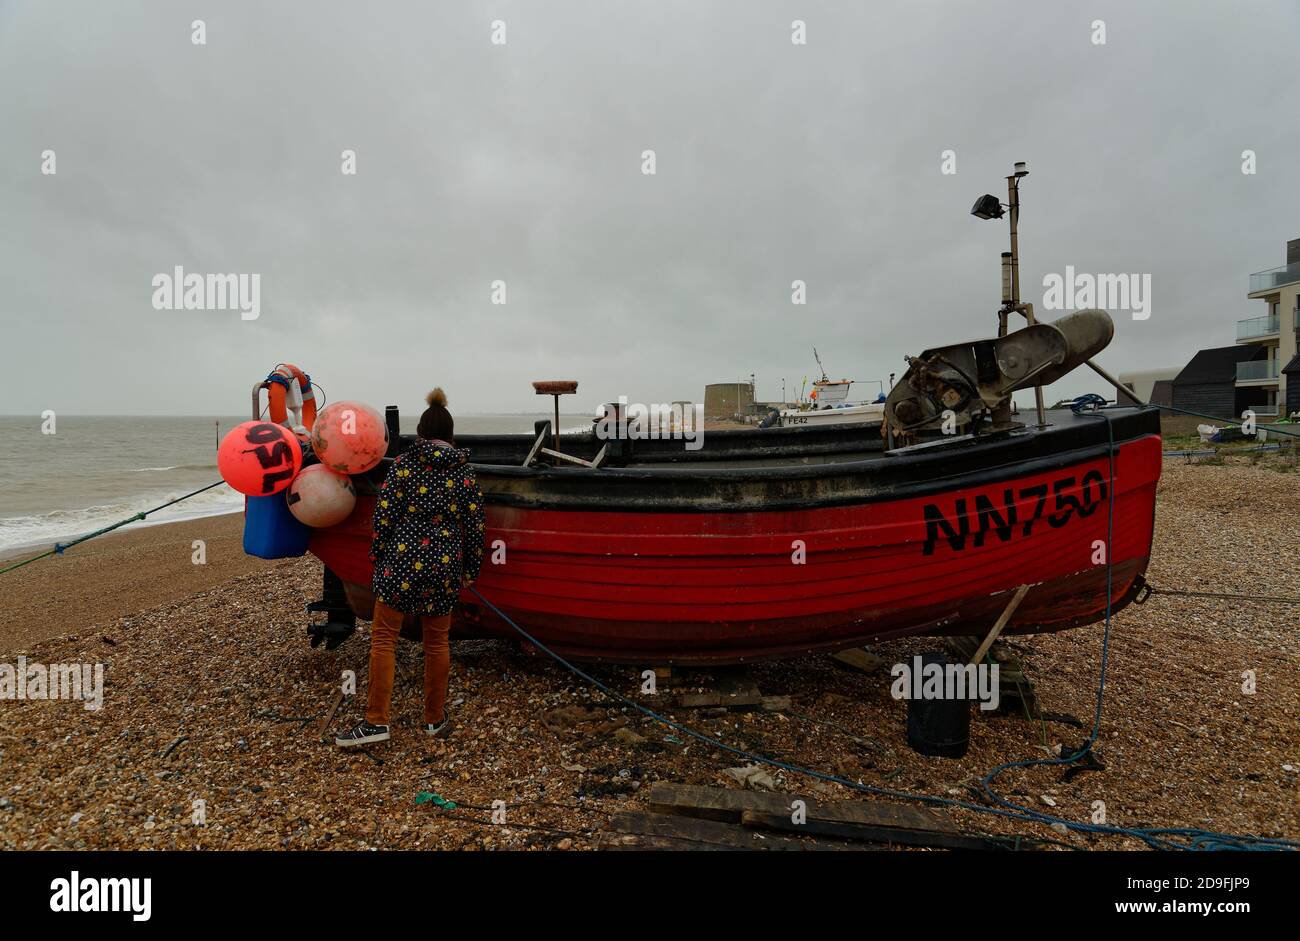 Bateau de pêche rouge sur une plage près de Hythe dans le Kent, Angleterre, Royaume-Uni. Banque D'Images